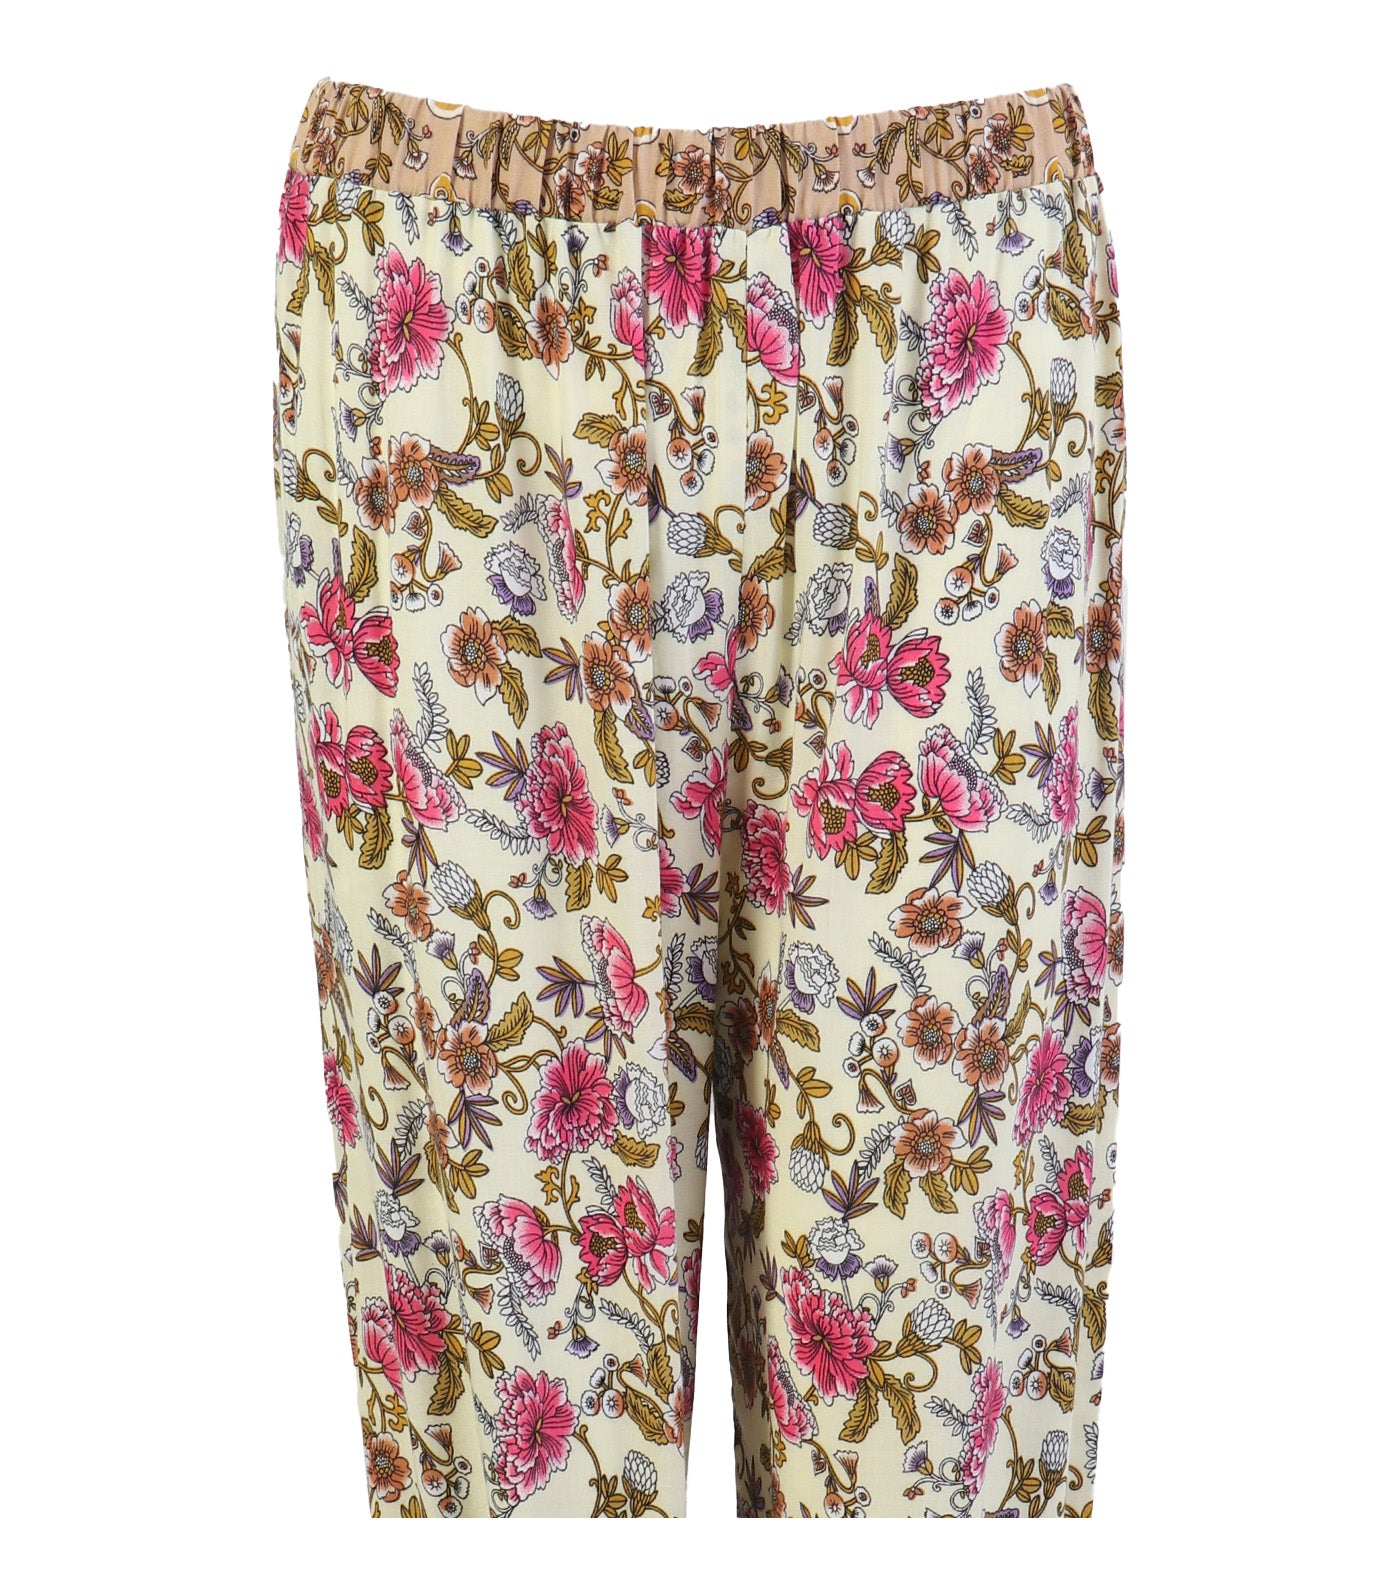 Lotus Resortwear Lanisa Multicolor Print Pants Beige